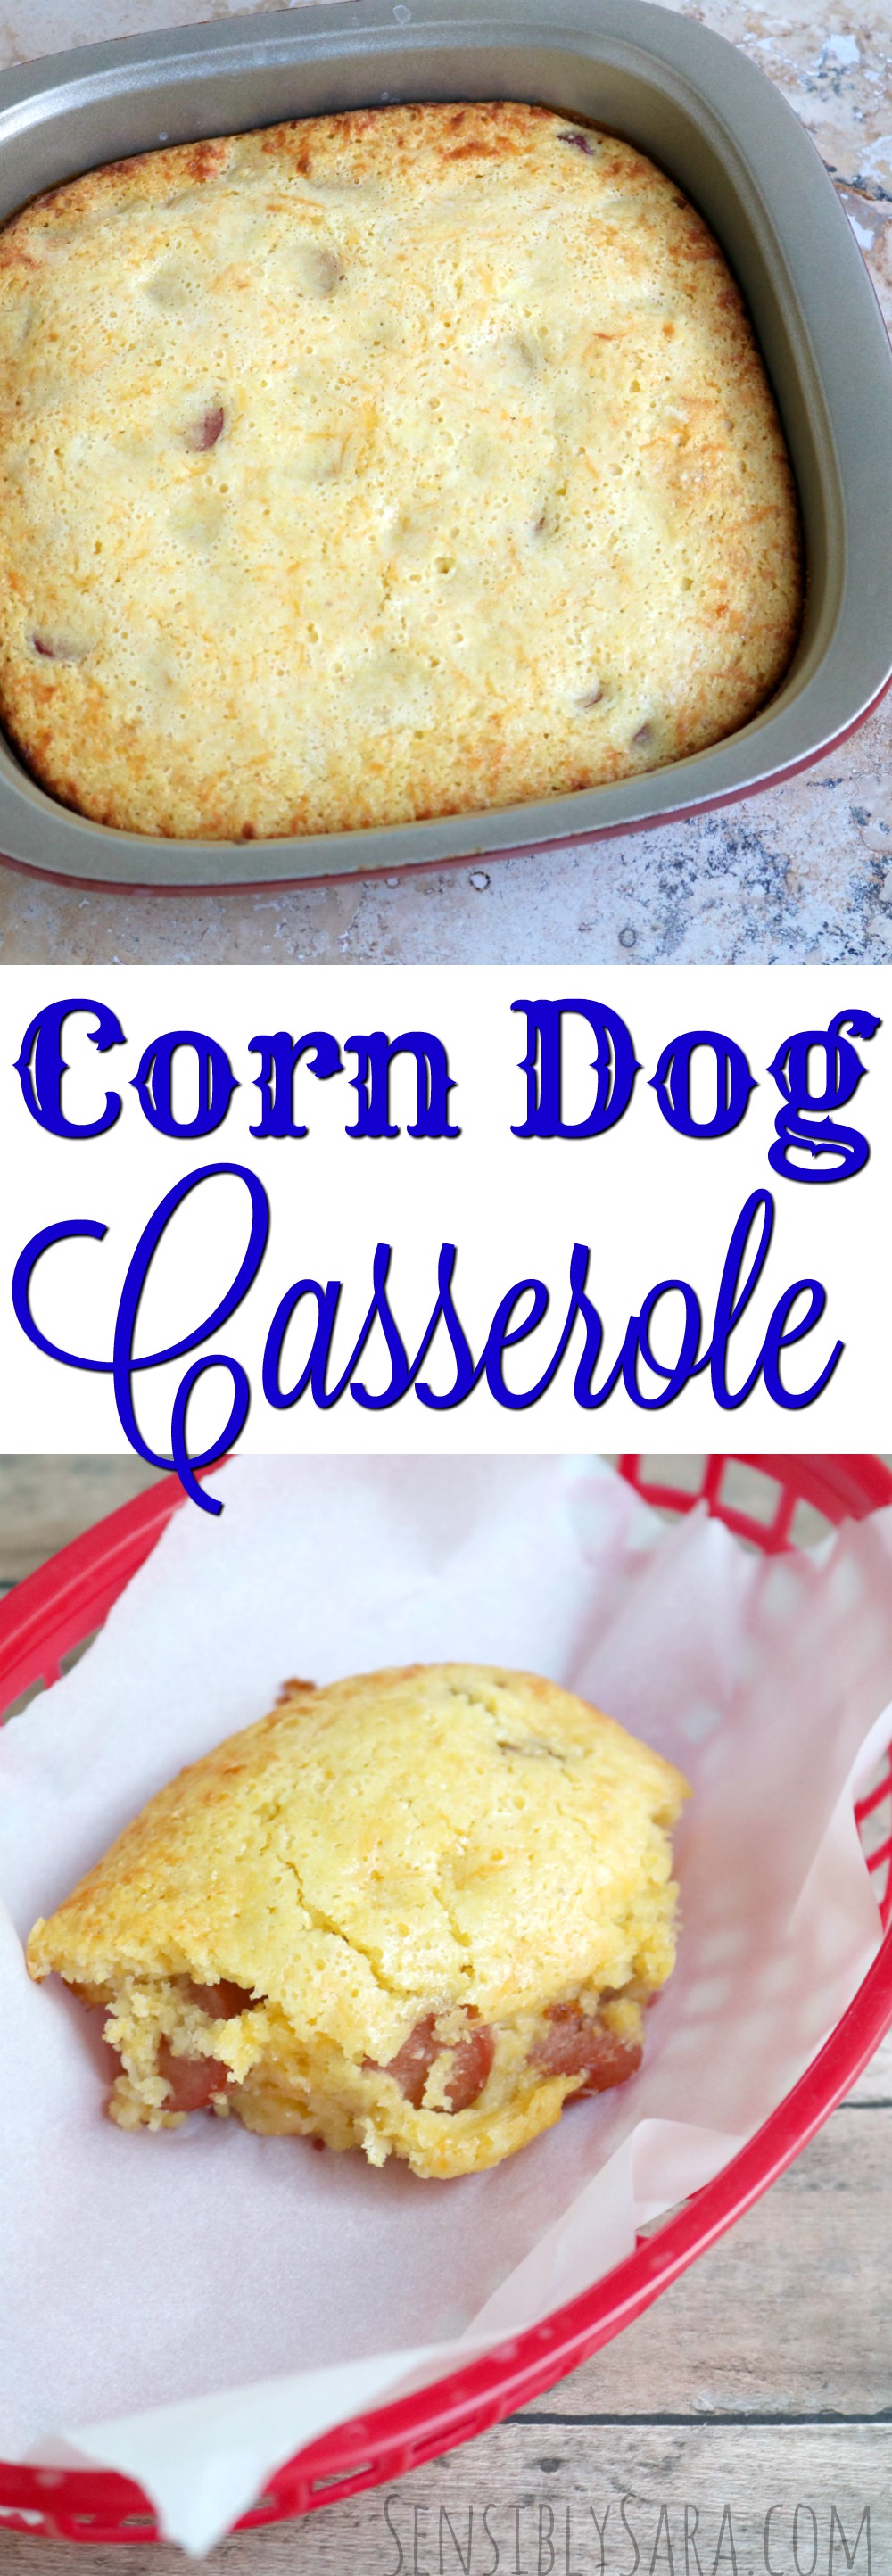 Corn Dog Casserole | SensiblySara.com